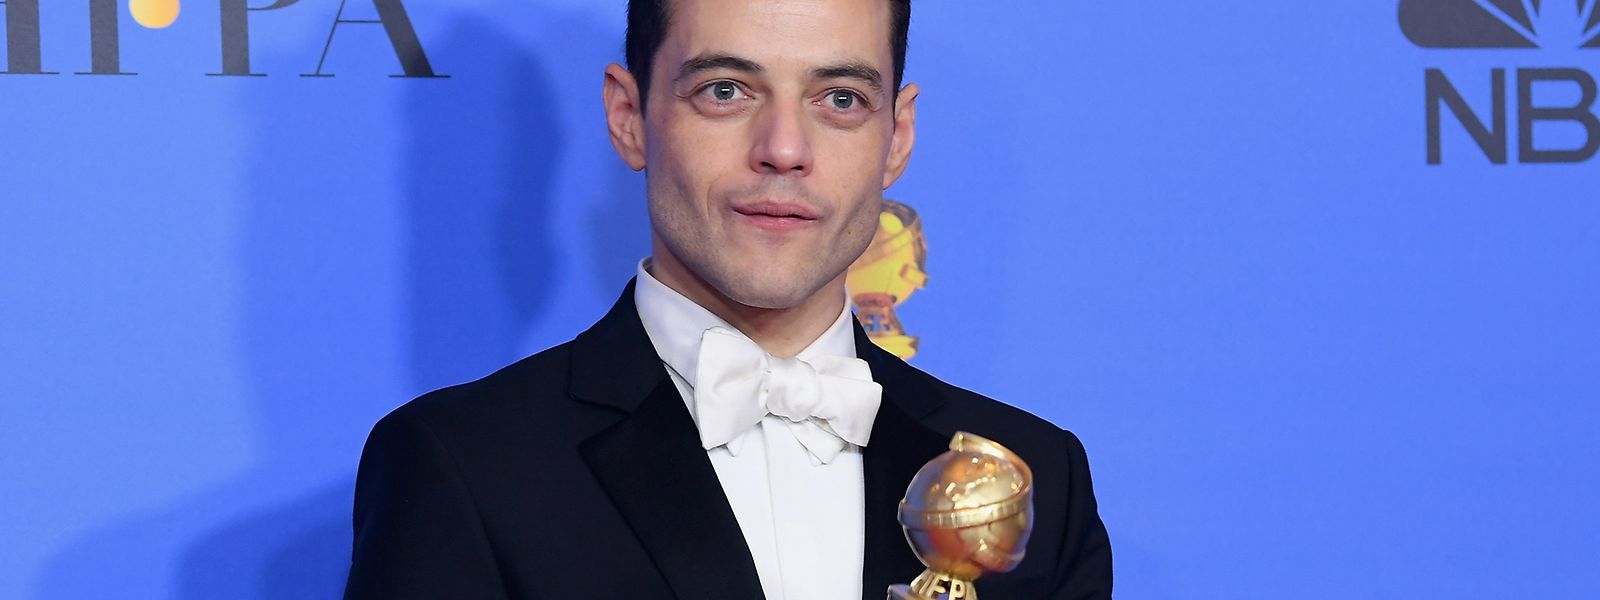 Rami Malek, Meilleur Acteur dramatique aux Golden Globes pour son rôle dans Bohemian Rhapsody où il interprète le chanteur de Queen, Freddy Mercury.